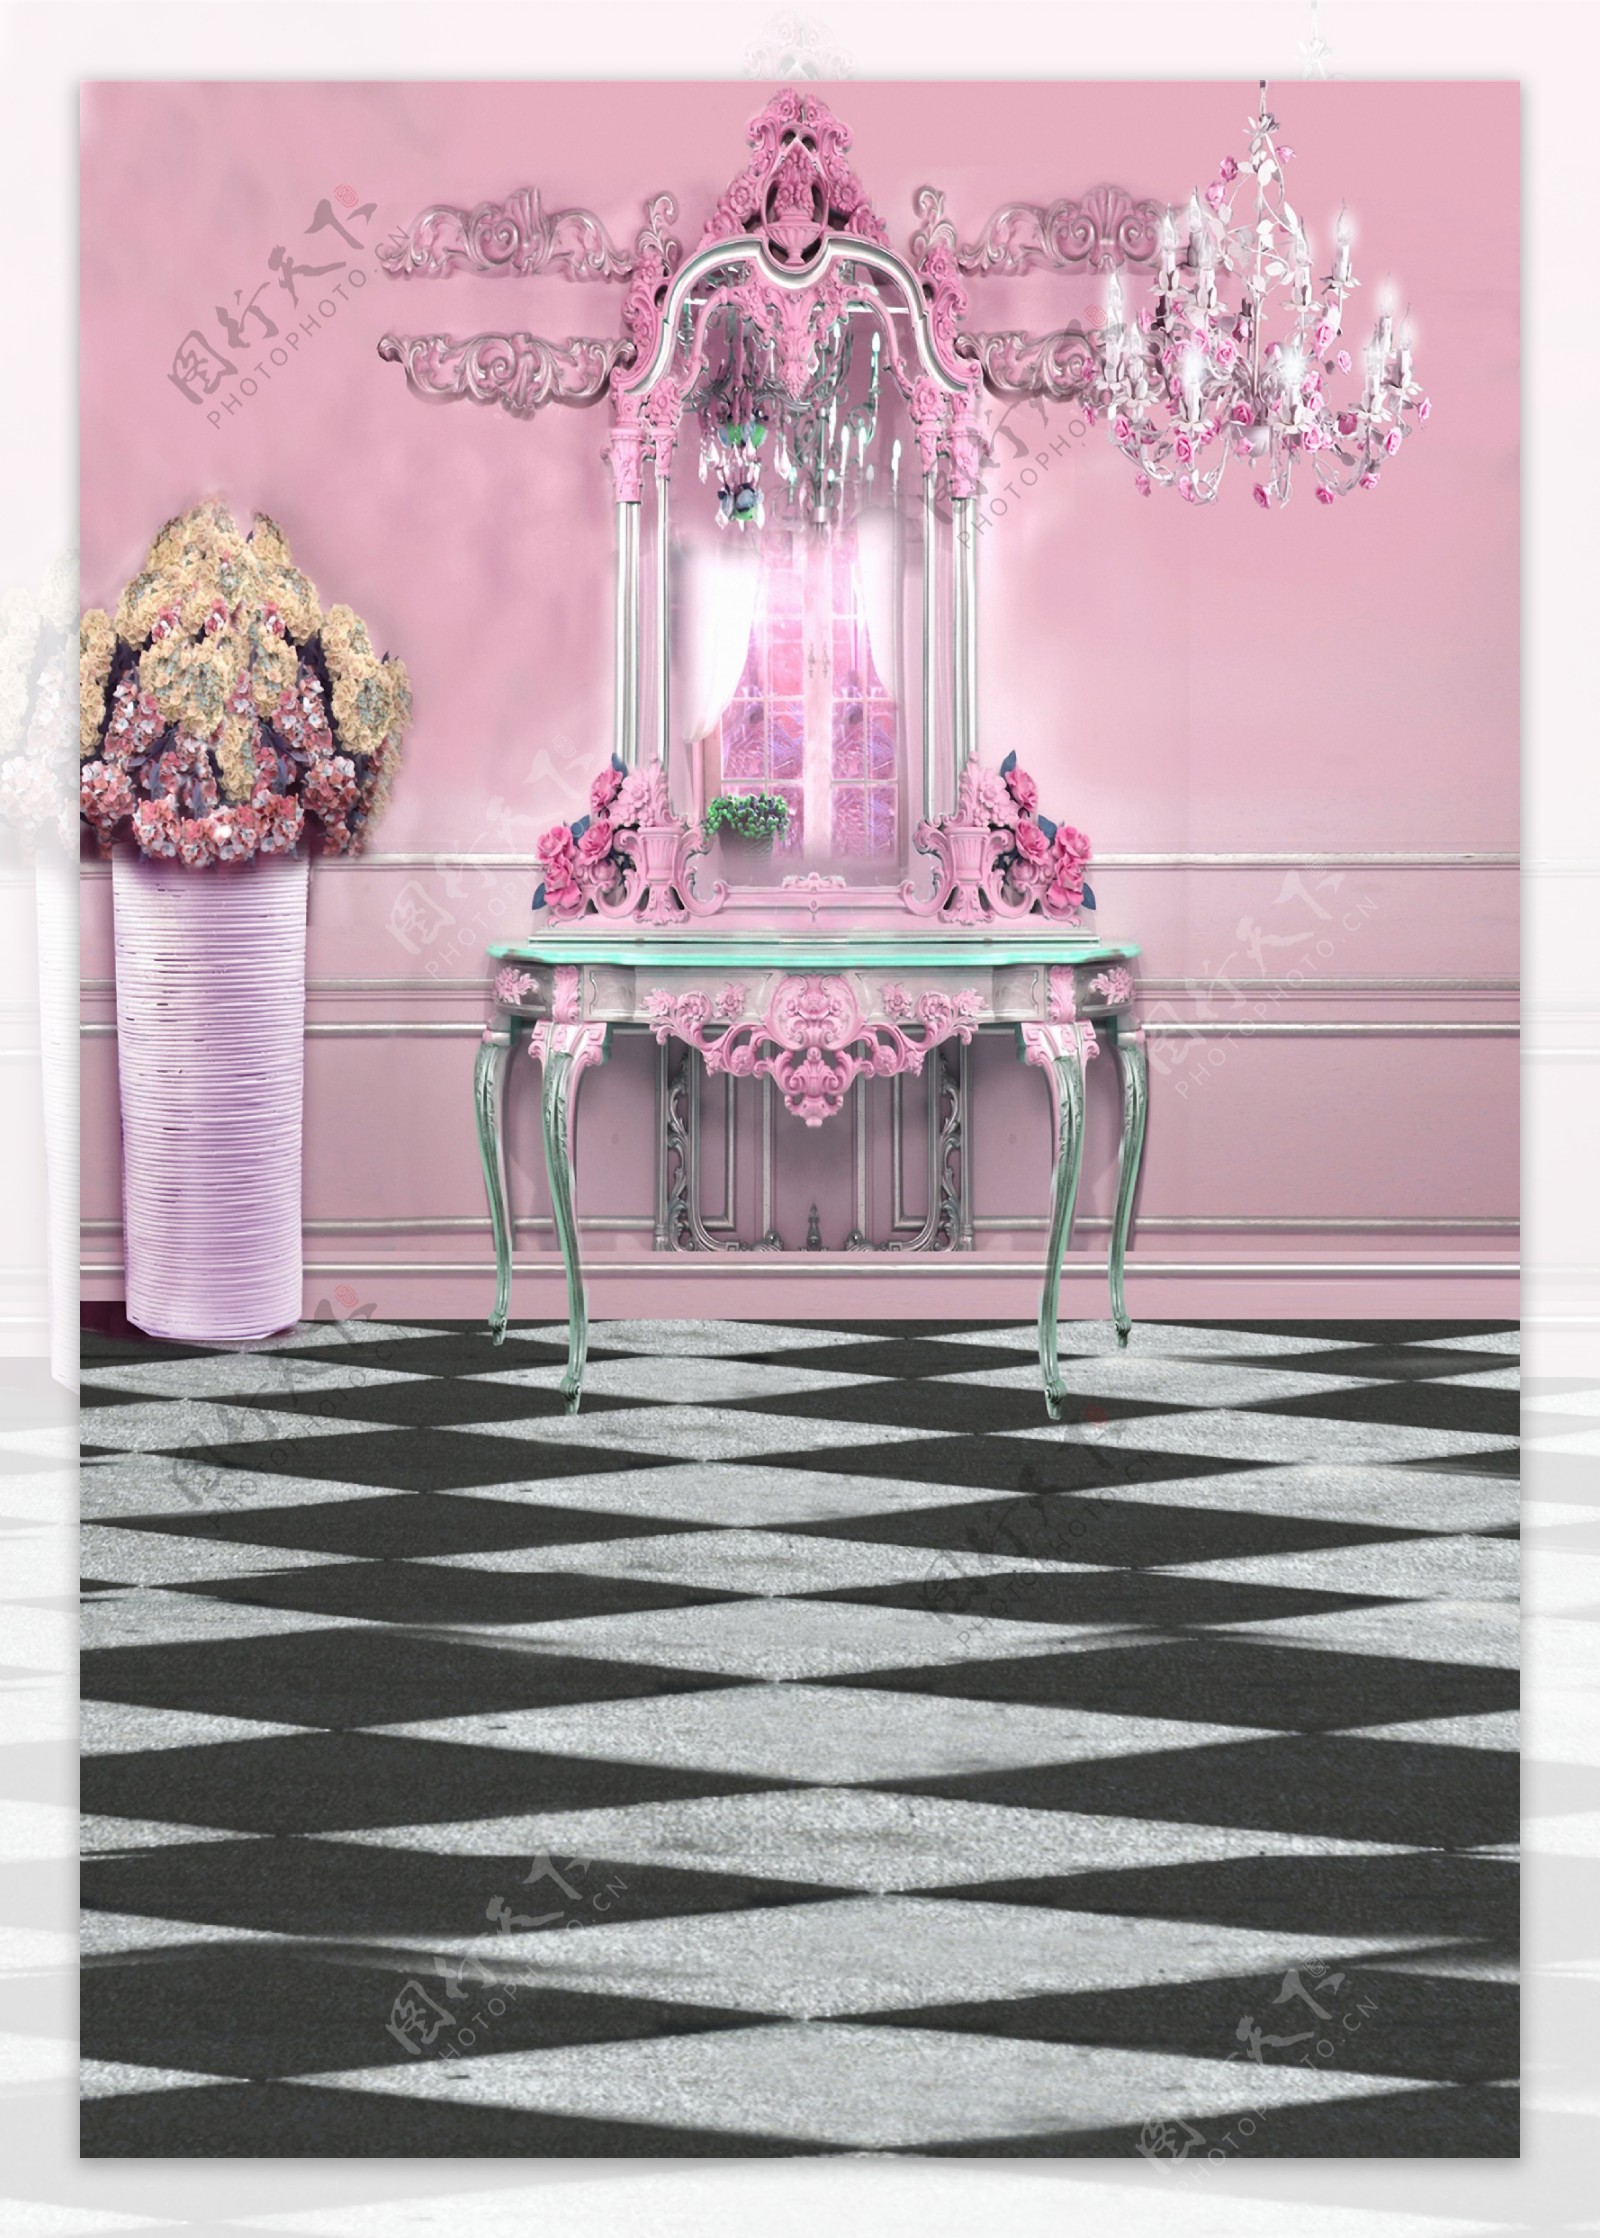 粉红色室内装饰影楼摄影背景图片